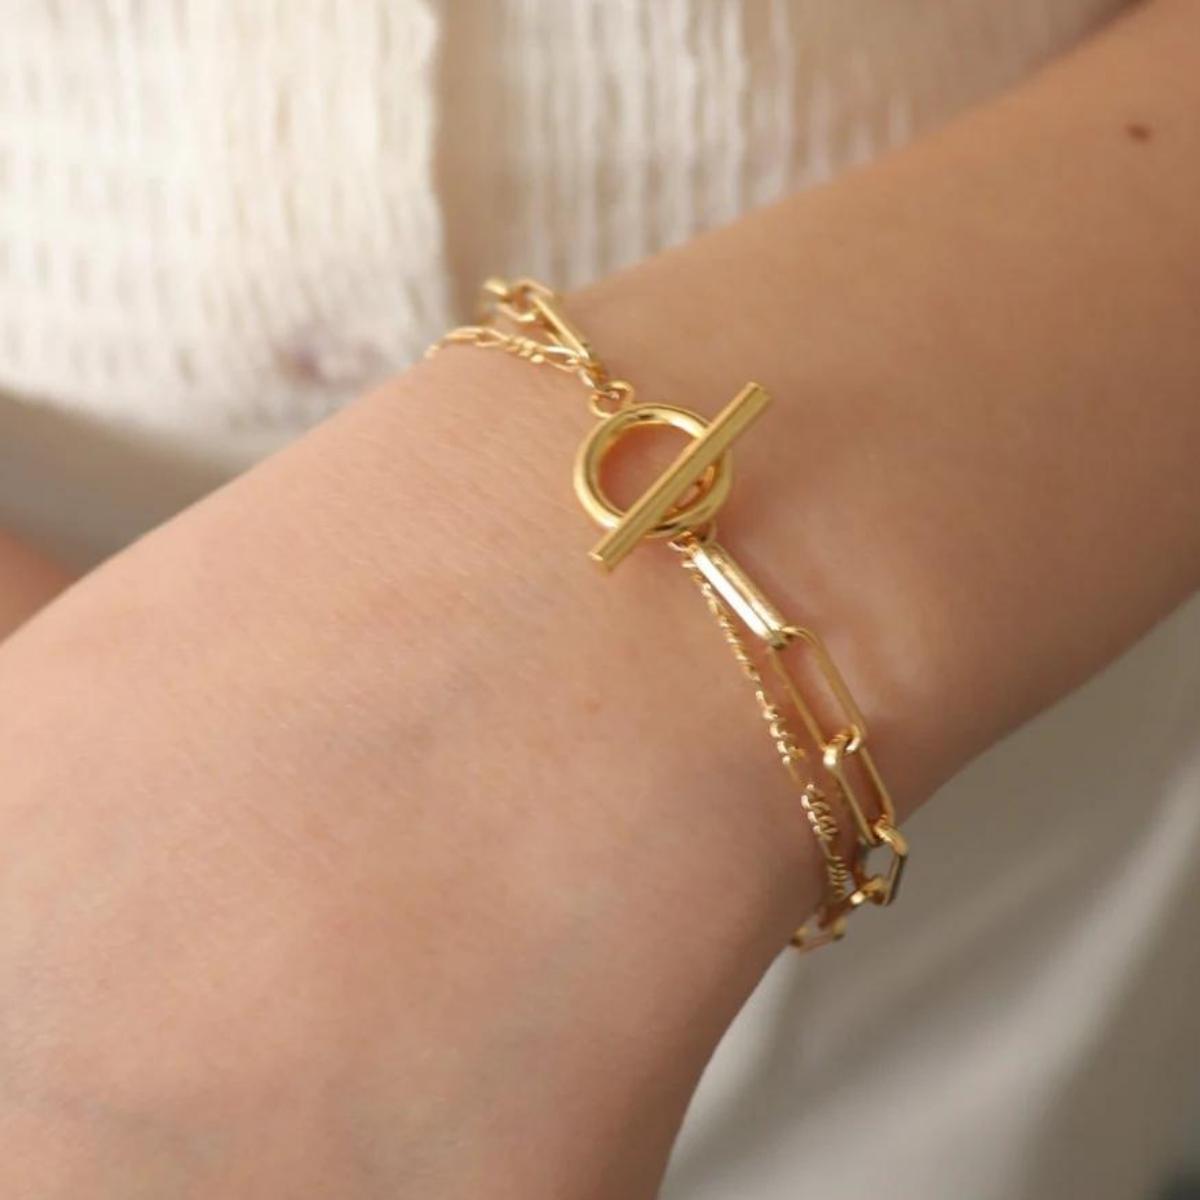 [Cherieオリジナルブレスレット]oli chain bracelet(corda)